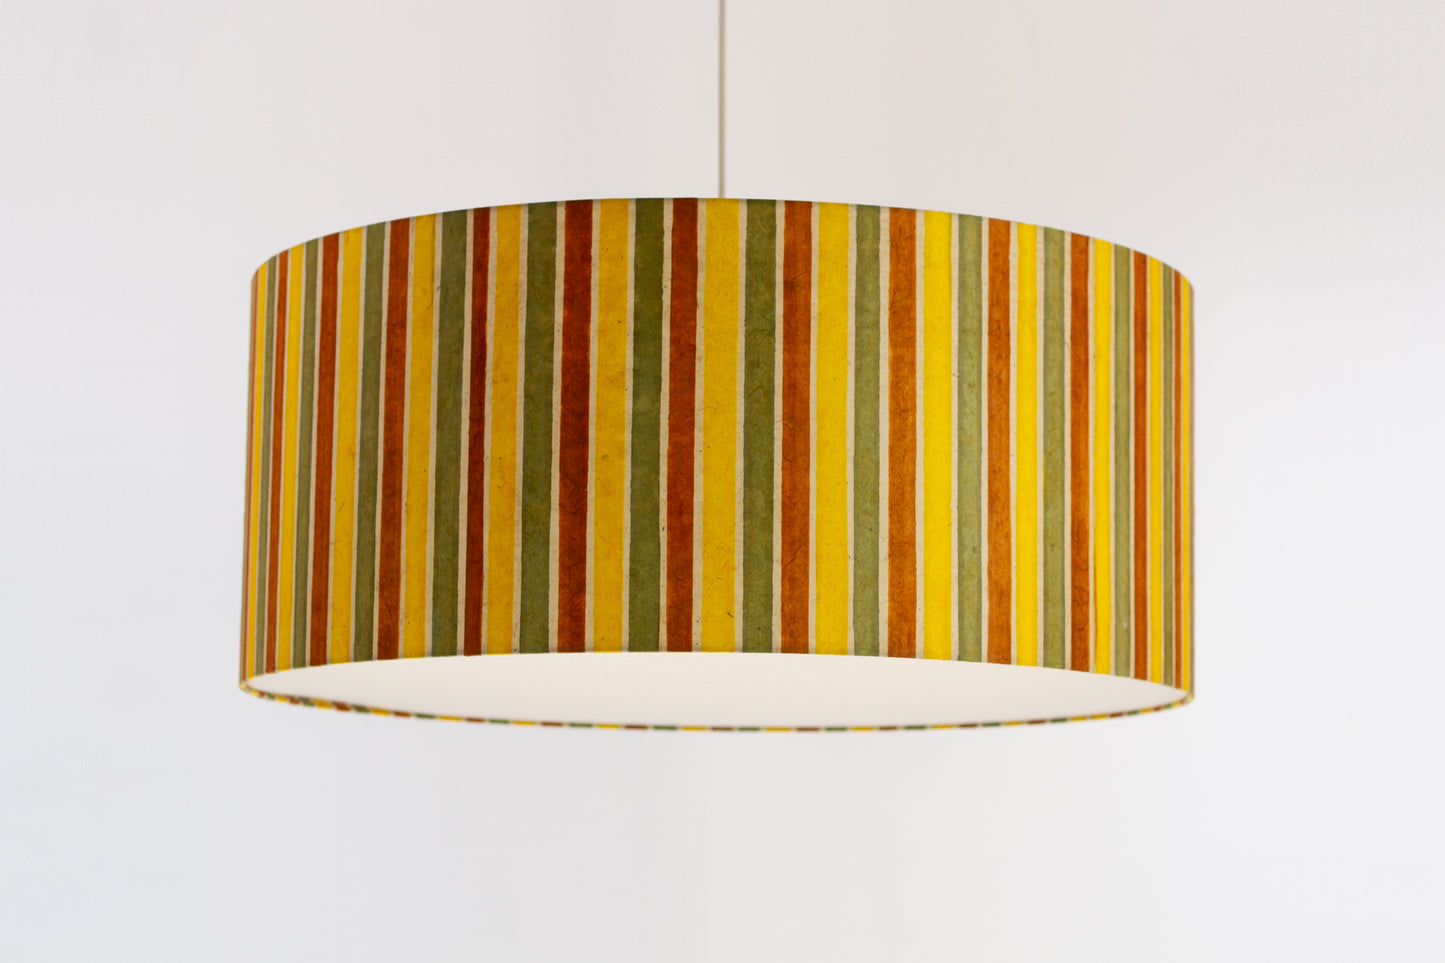 Drum Lamp Shade - P06 - Batik Stripes Autumn, 70cm(d) x 30cm(h)